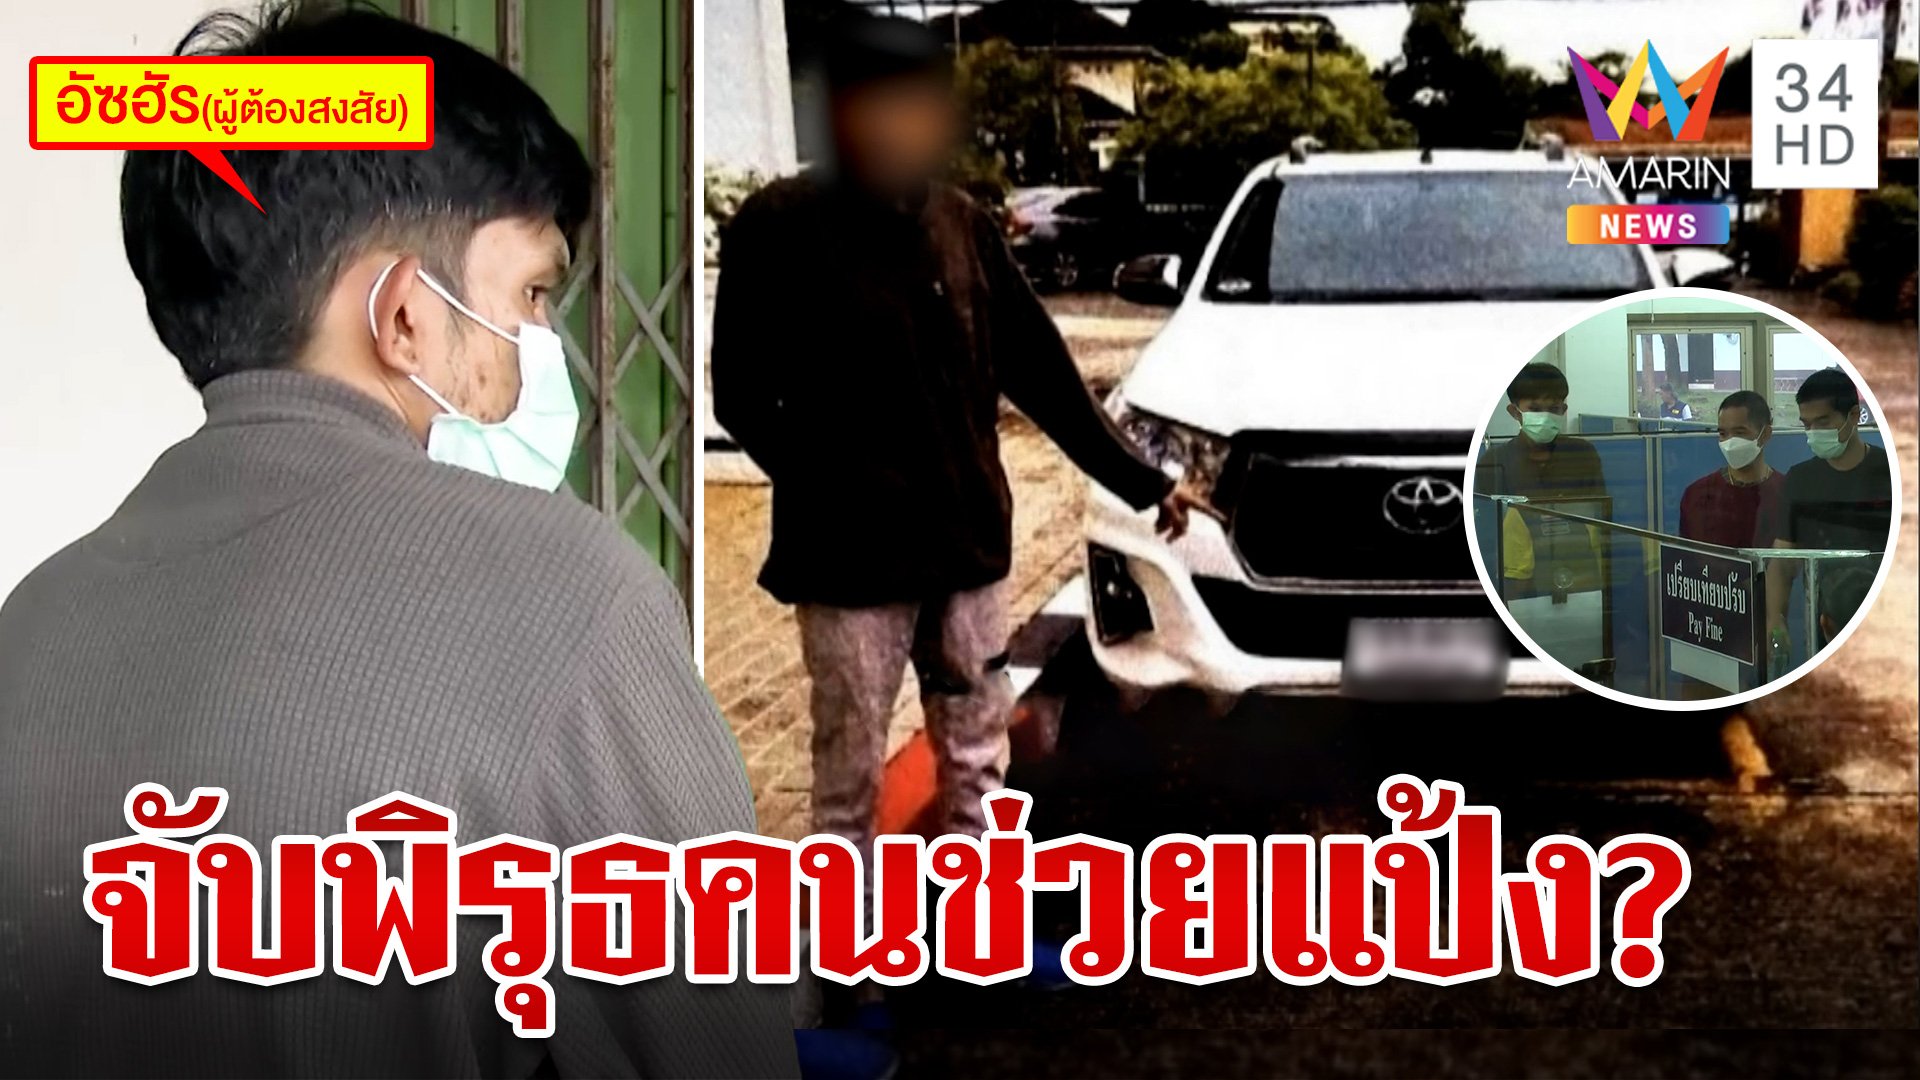 ก๊วนสมุนโต้วุ่นช่วย "แป้ง" เผ่นพ้นไทย อัซฮัรงัดไทม์ไลน์ปัดกรุยทางให้ | ทุบโต๊ะข่าว | 1 ธ.ค. 66 | AMARIN TVHD34